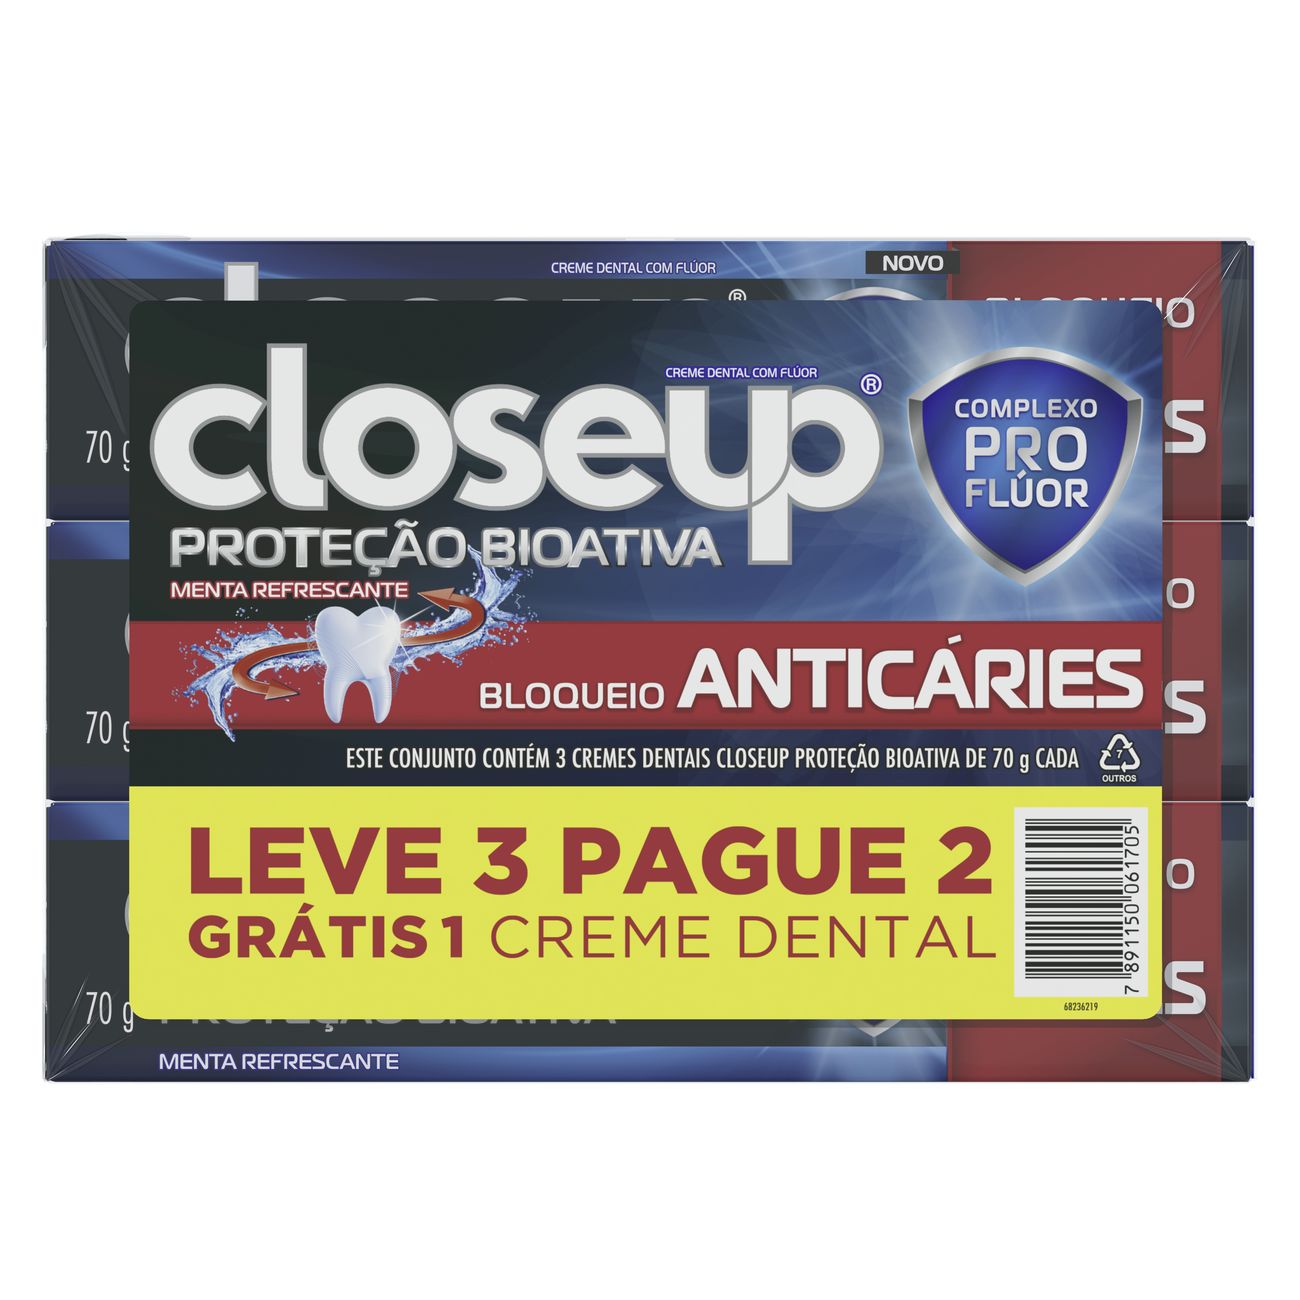 Oferta Creme Dental Close Up Proteo Bioativa Bloqueio Anticries 70g